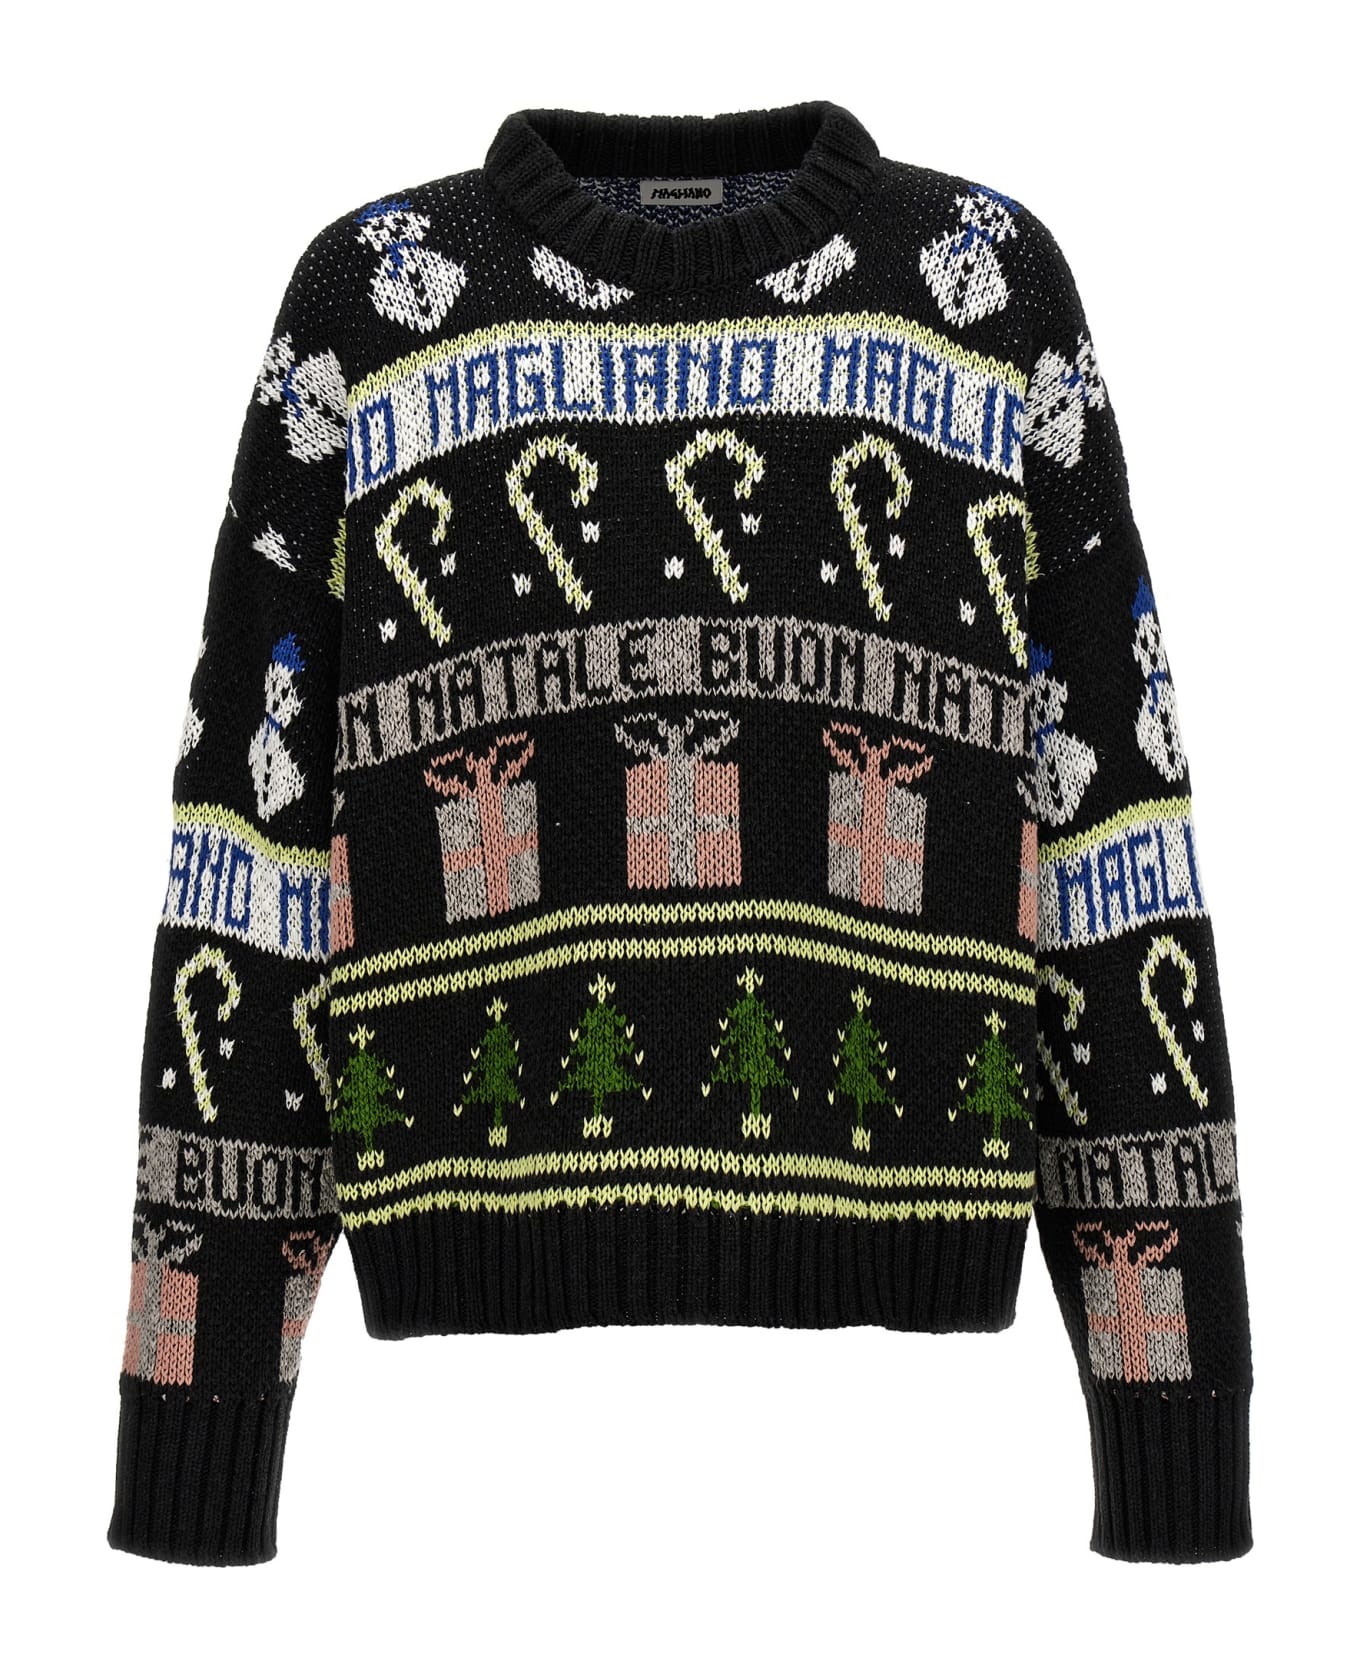 Magliano 'buone Feste' Sweater - Black   ニットウェア